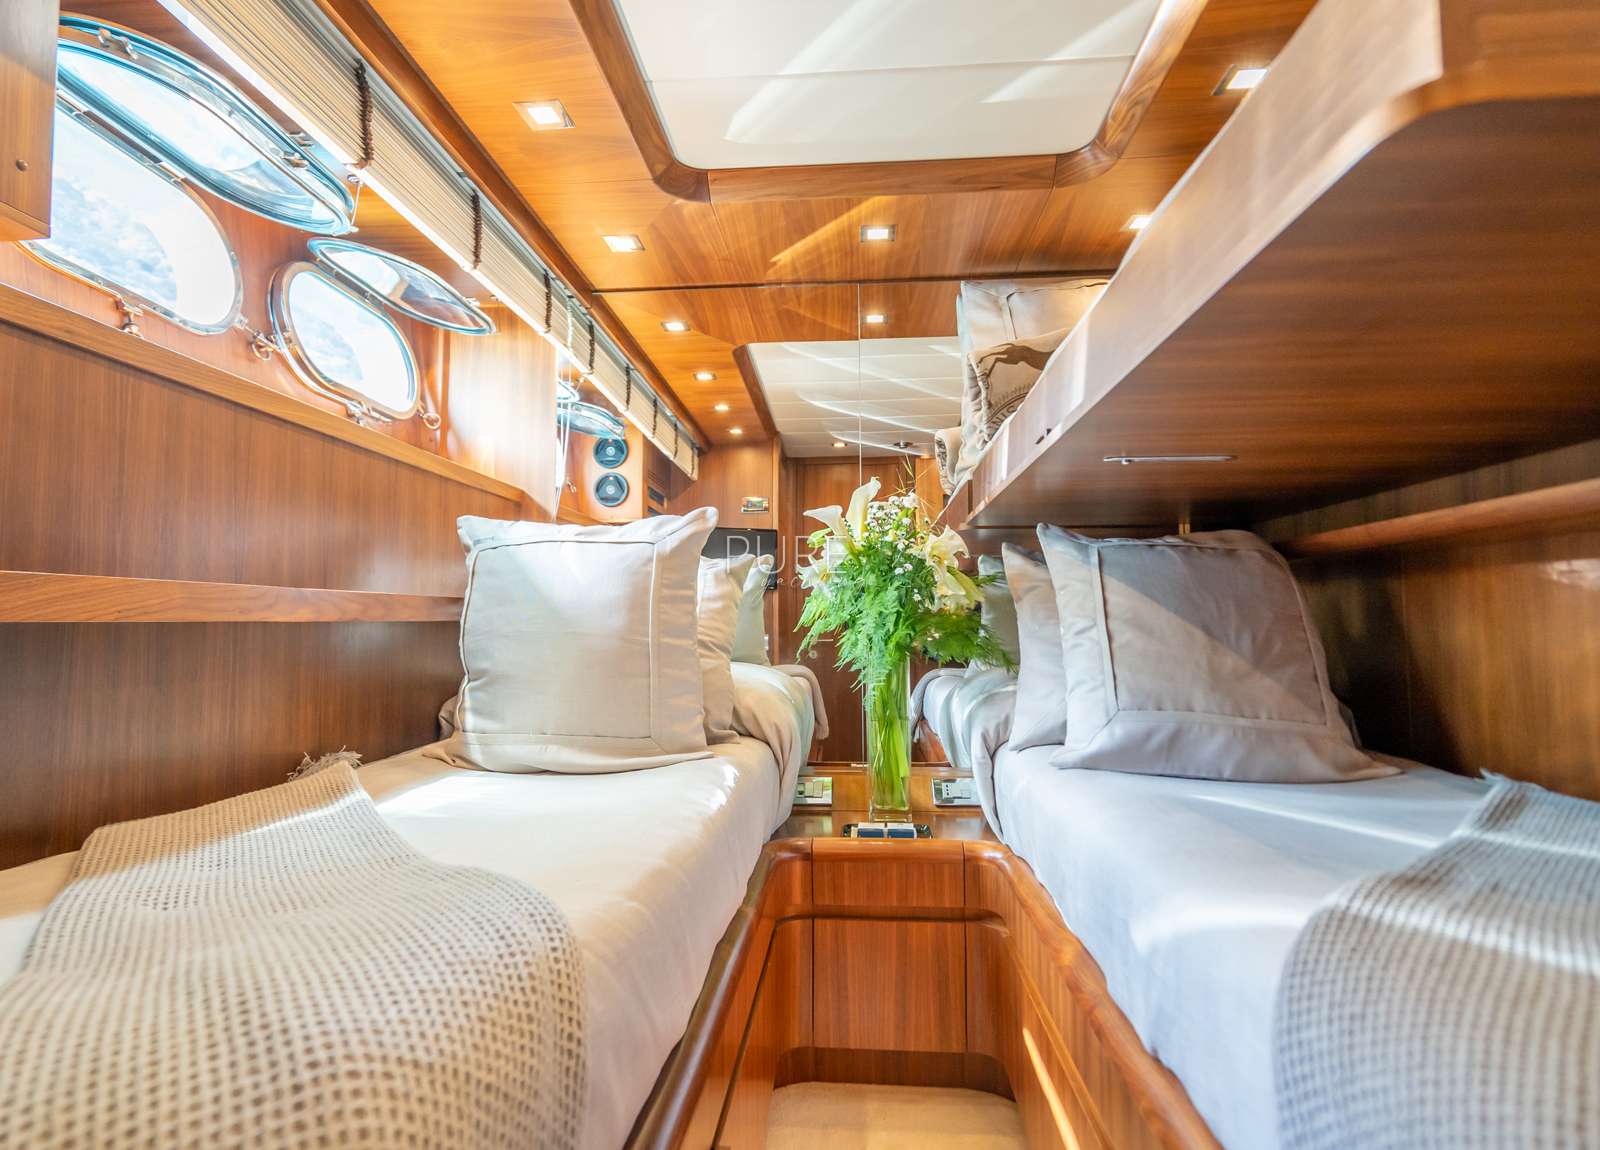 twin cabin luxury yacht lex maiora 26m balearic islands